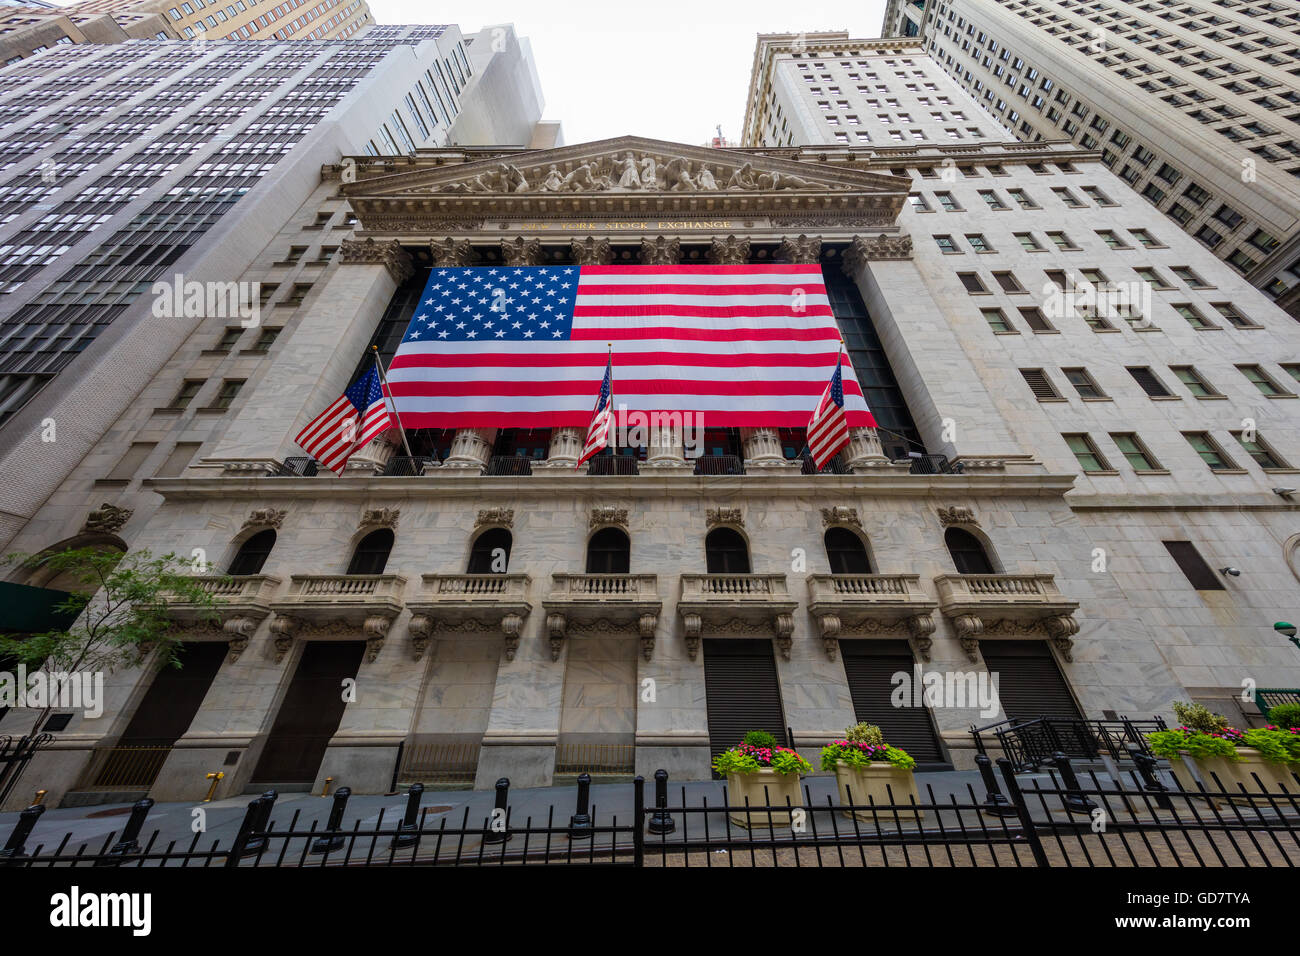 La Bourse de New York est un American Stock Exchange, situé au 11 Wall Street, Lower Manhattan, New York City Banque D'Images